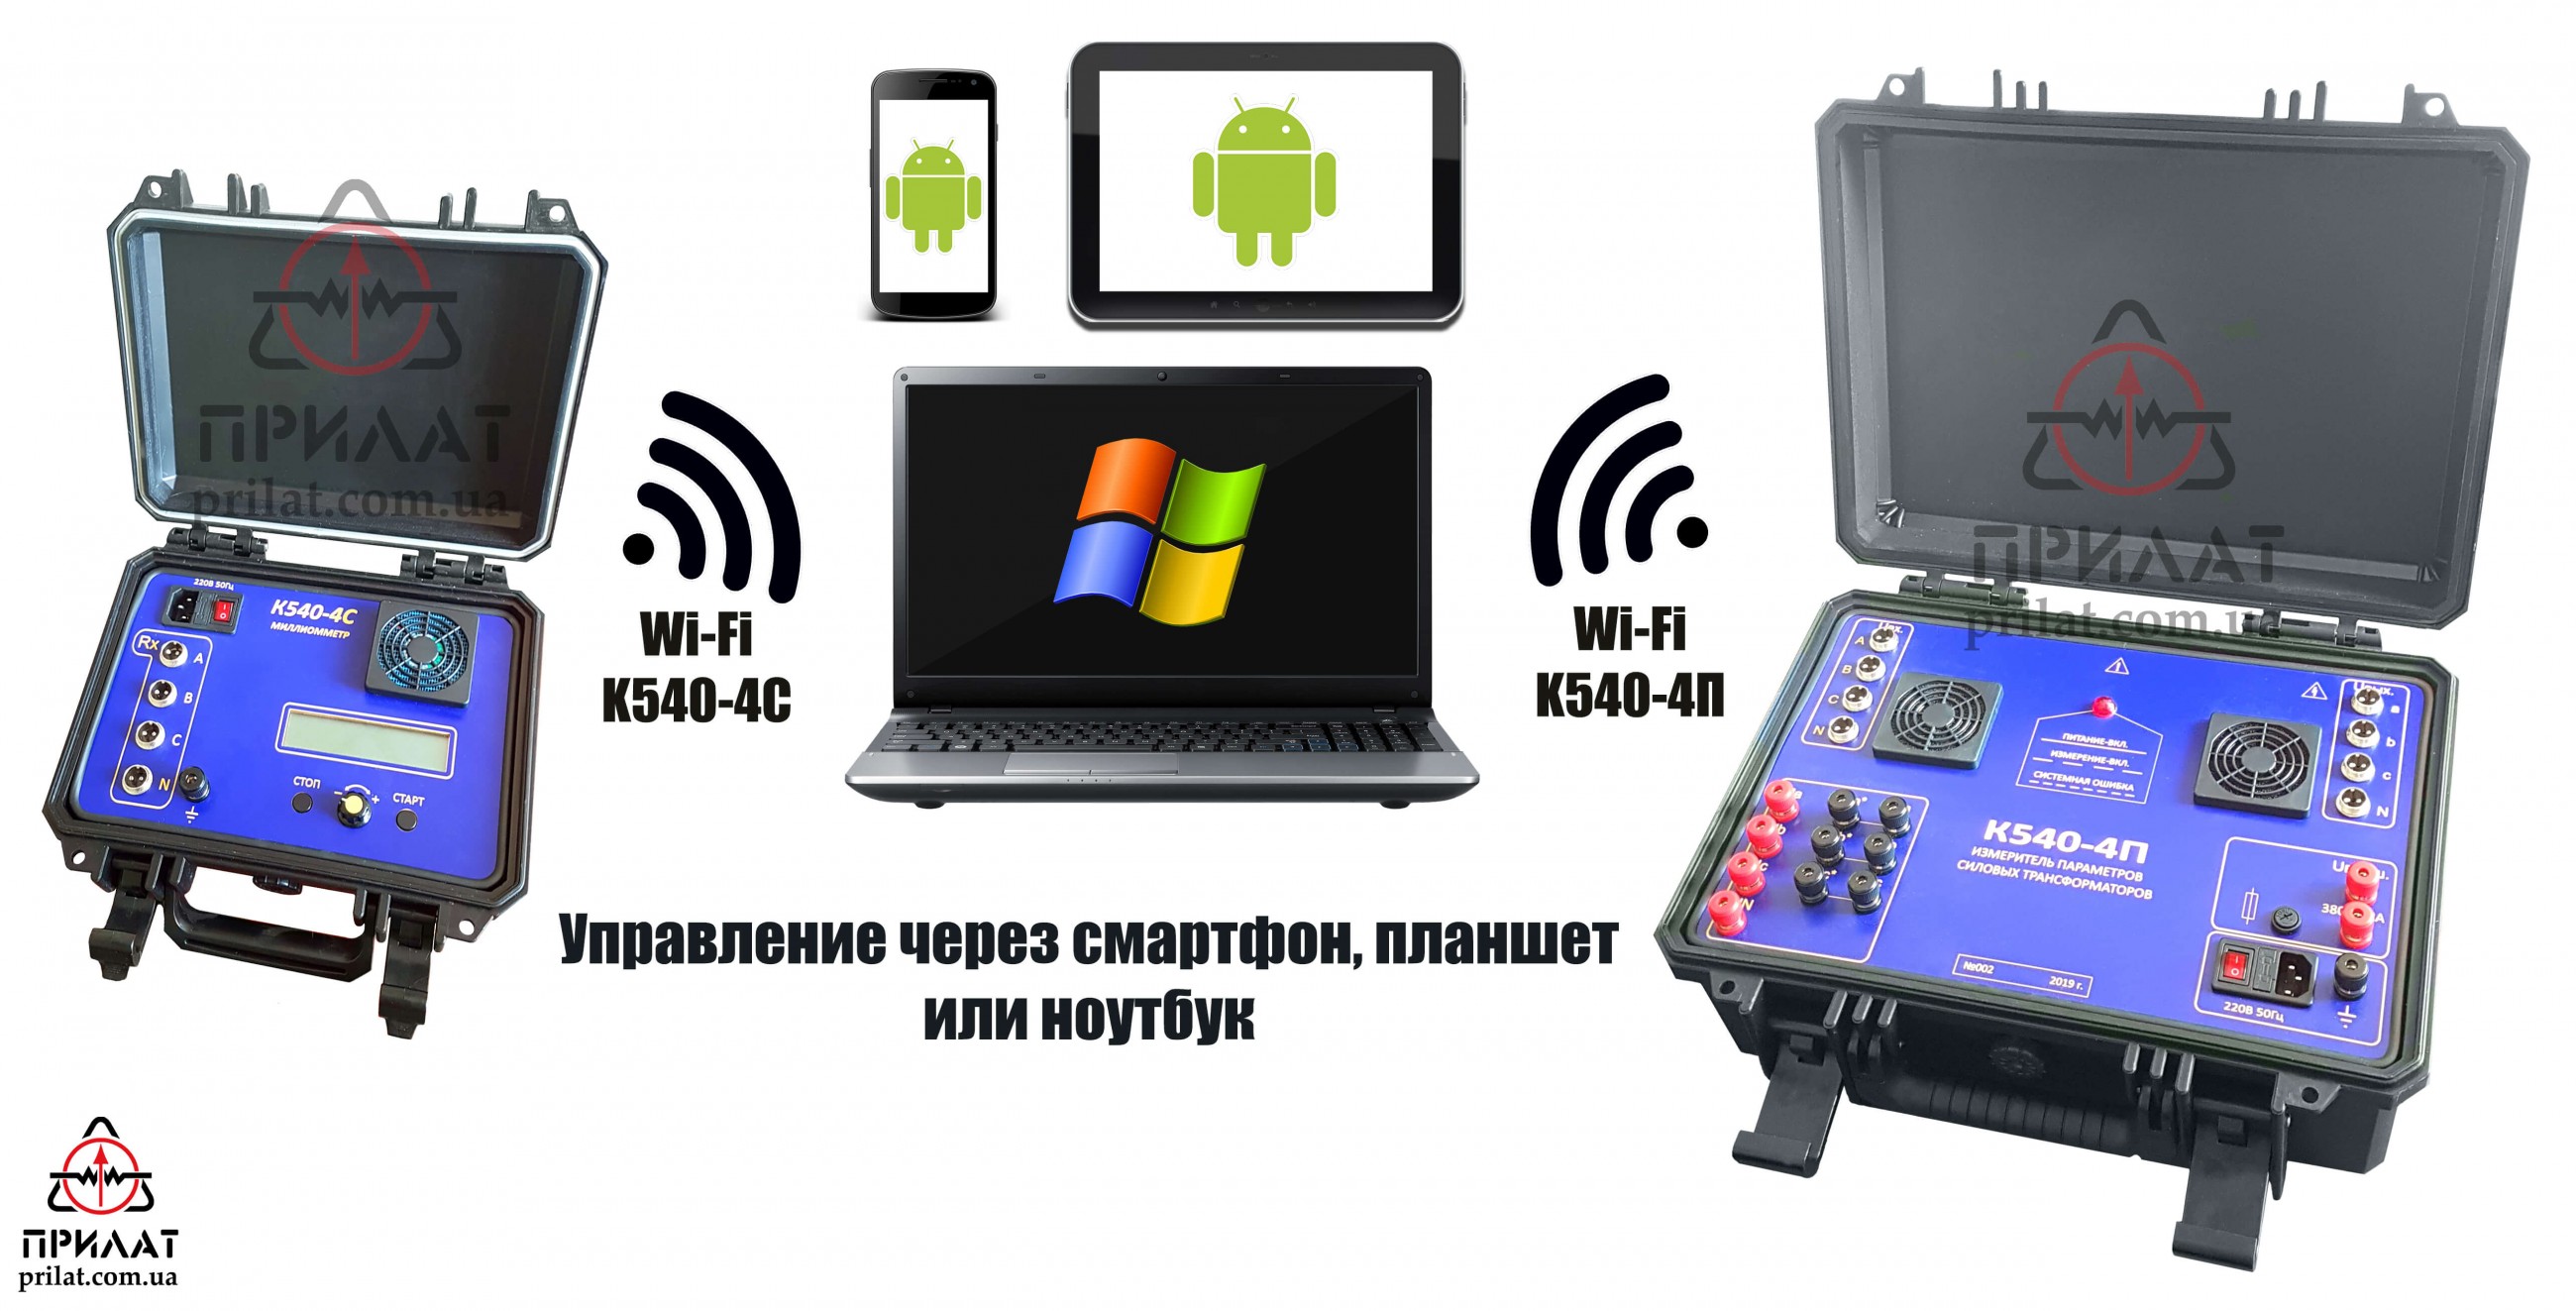 Комплект измерительный параметров силовых трансформаторов К540-4ПС. Управление через Wi-Fi с использованием смартфона, планшета или ноутбука